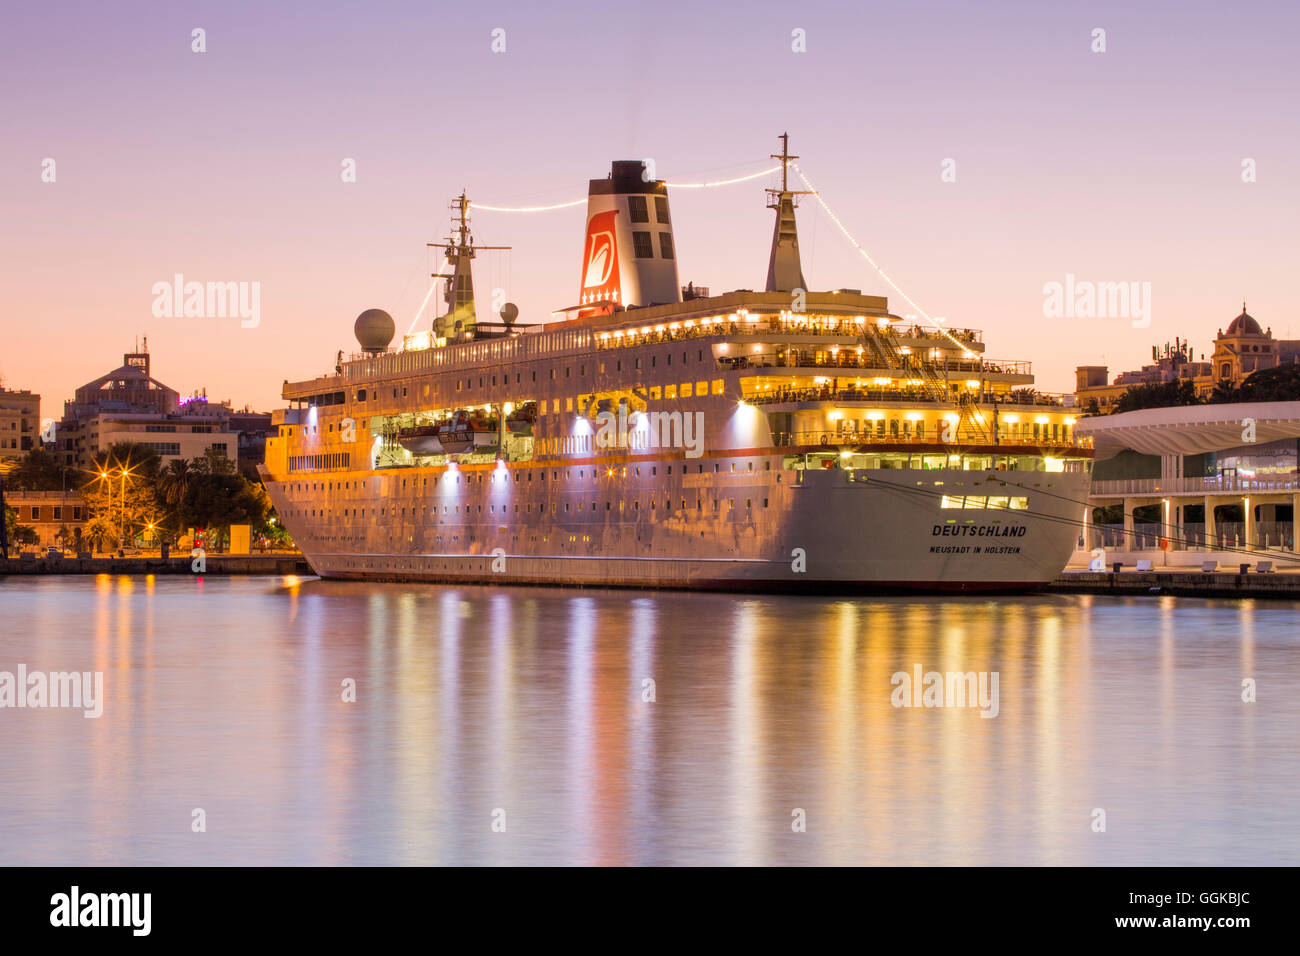 Barco Crucero MS Deutschland (Peter Deilmann Reederei) en Malaga Terminal de Cruceros al atardecer, Málaga, Andalucía, España Foto de stock